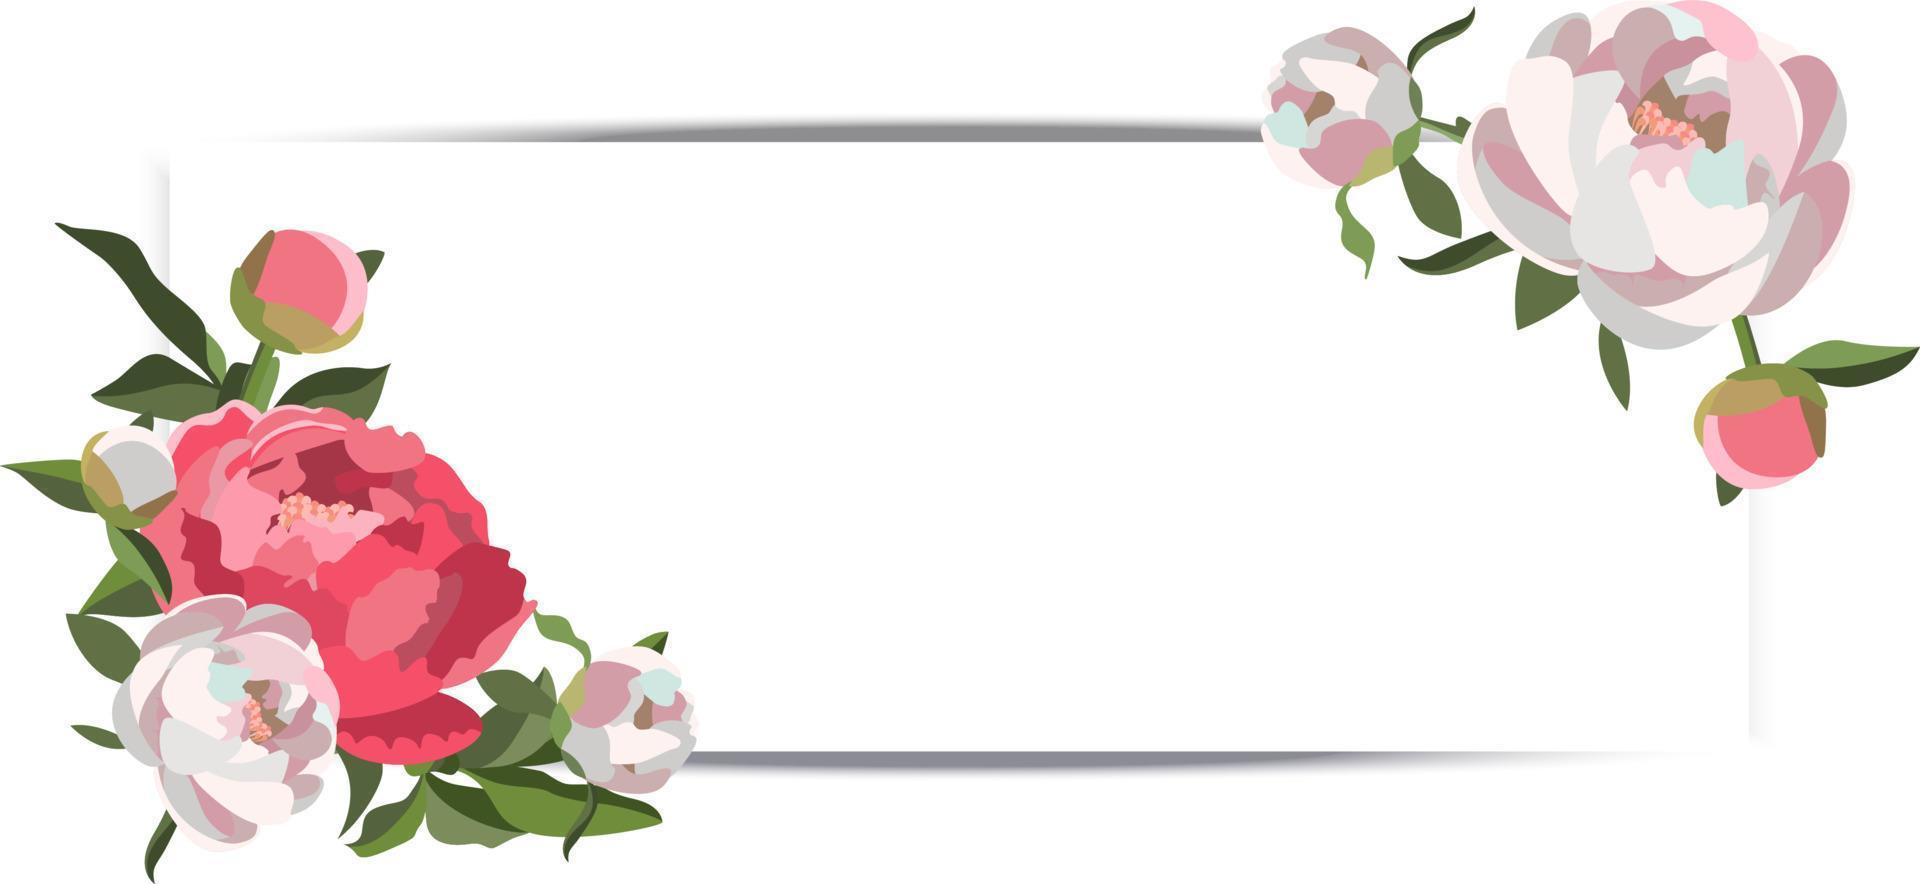 vektor horisontell bröllop baner med vit och rosa pion blommig kompositioner